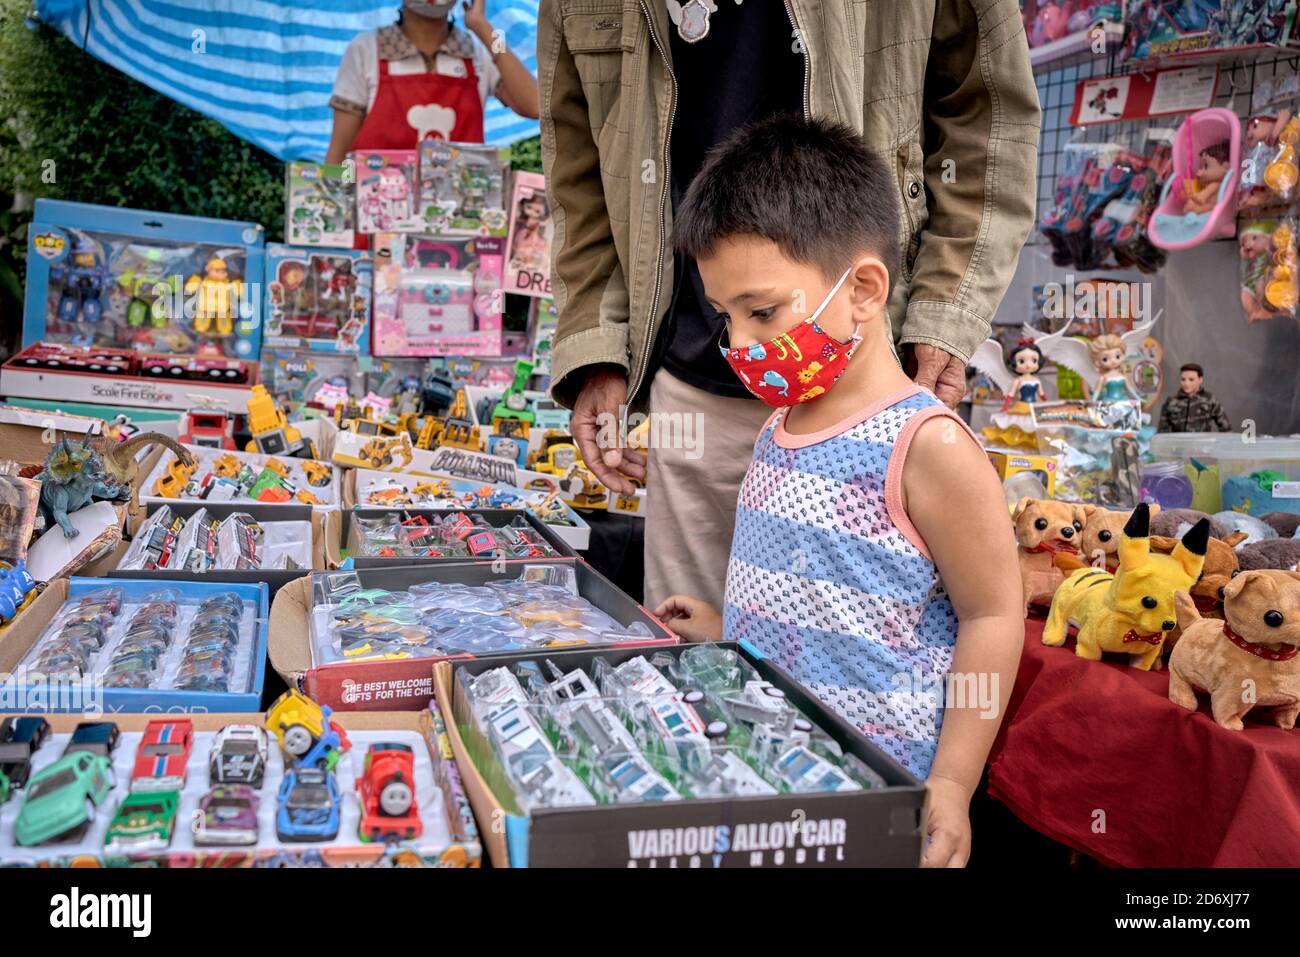 Entscheidungszeit. Zeit zur Auswahl. Kleiner Junge an einem Spielzeugstand, wenn man bedenkt, welches Spielzeug man kaufen soll. Thailand Südostasien Stockfoto